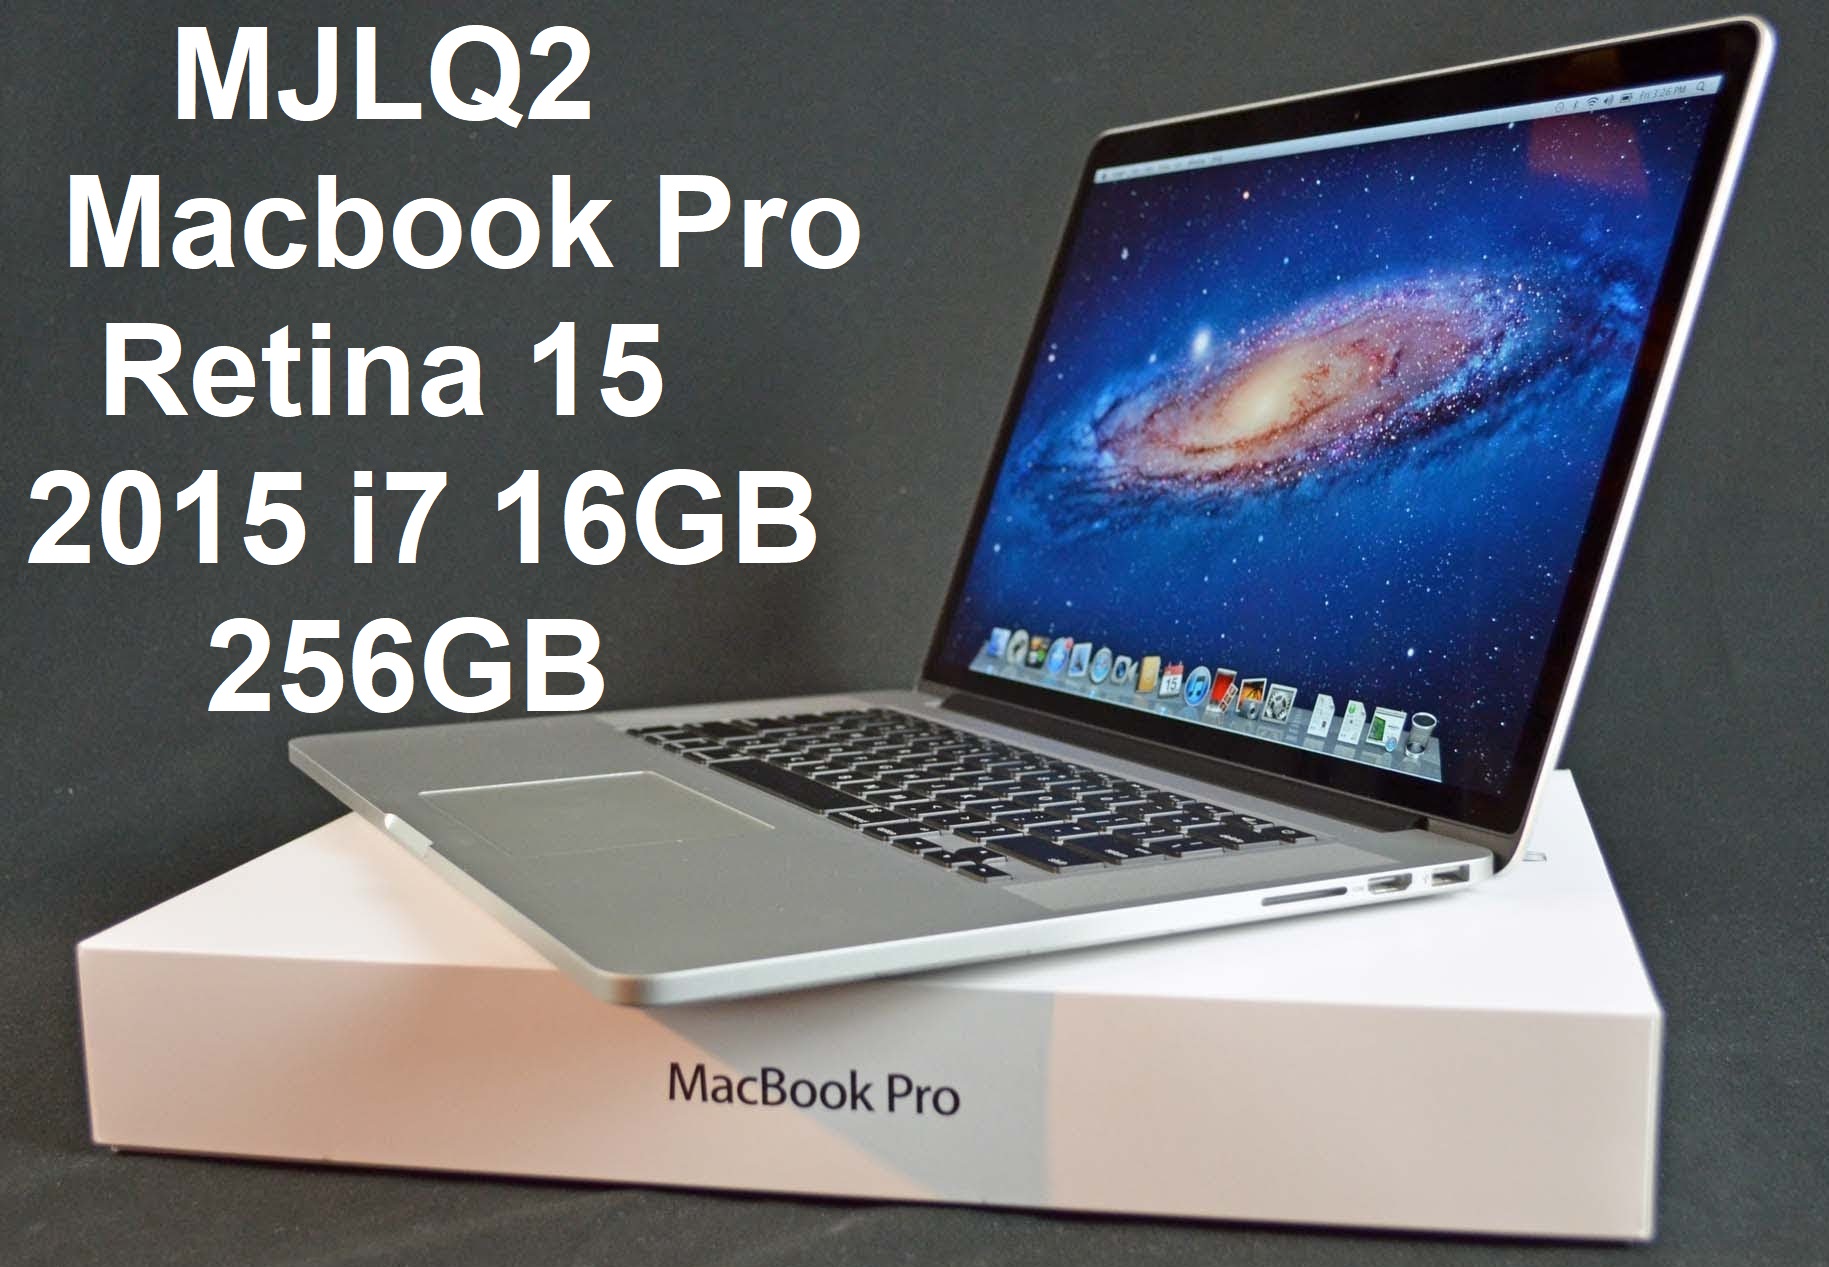 MJLQ2 Macbook Pro Retina 15 2015 i7 16GB 256GB.